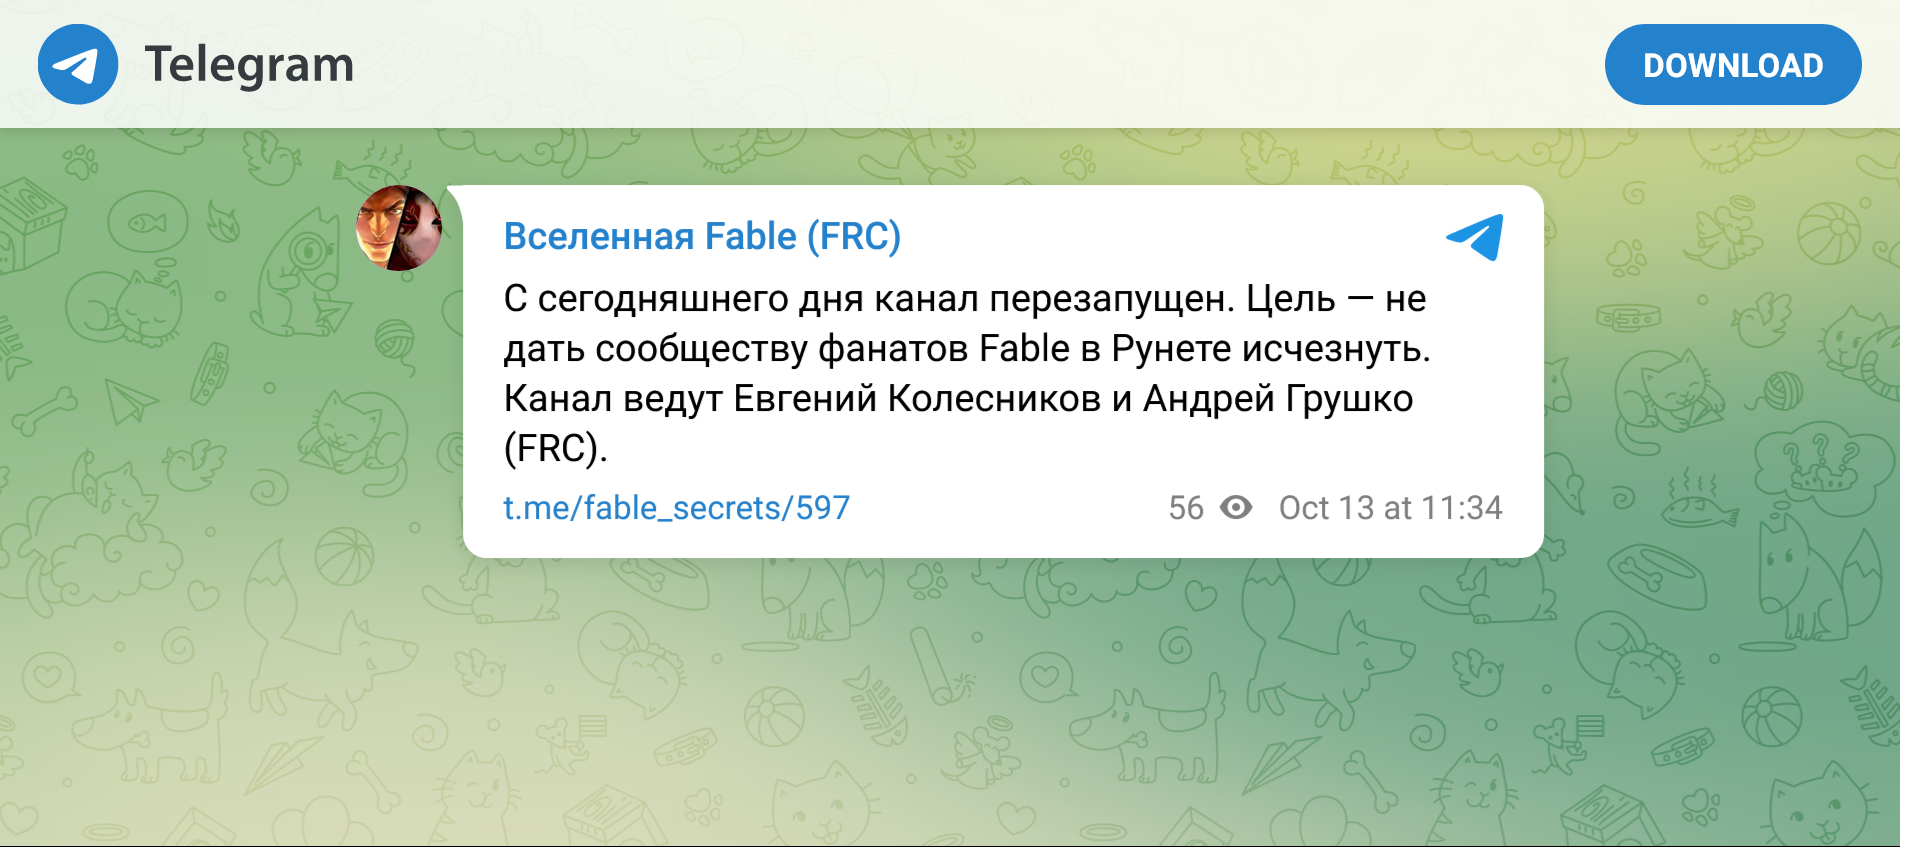 В Telegram появился новый проект по Fable